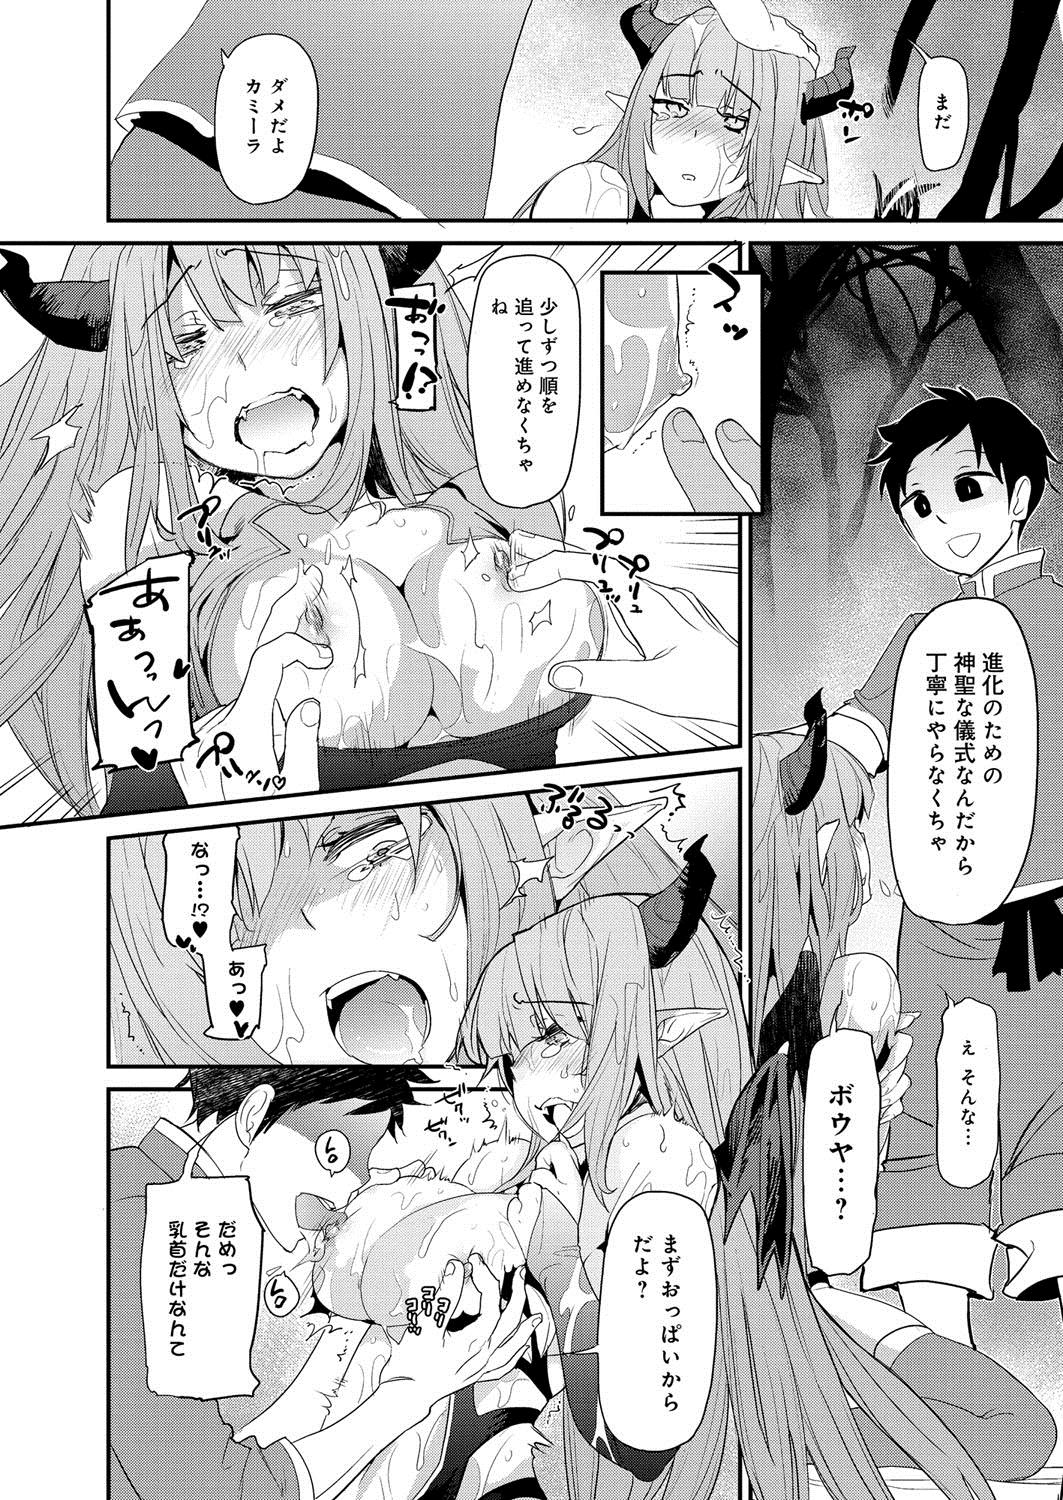 [Anthology] Lord of Valkyrie Adult - Comic Anthology R18 Handakara Saigomade... Mou, Kishi-sama no Ecchi♪ 53